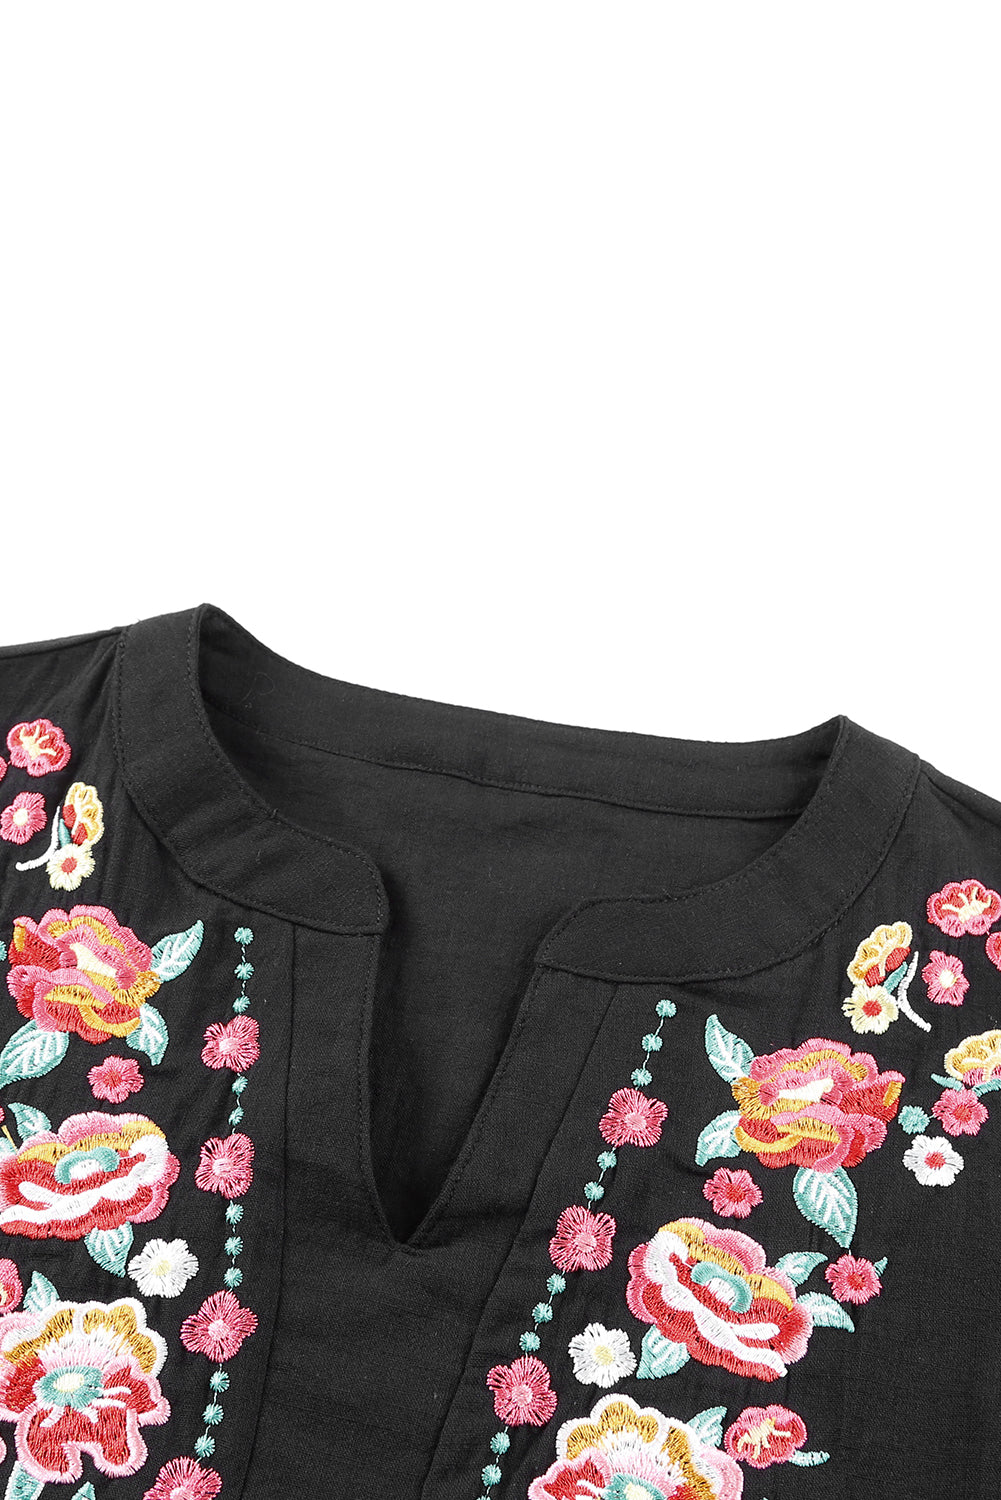 Črna bluza z izvezenimi cvetličnimi naborki in puf rokavi